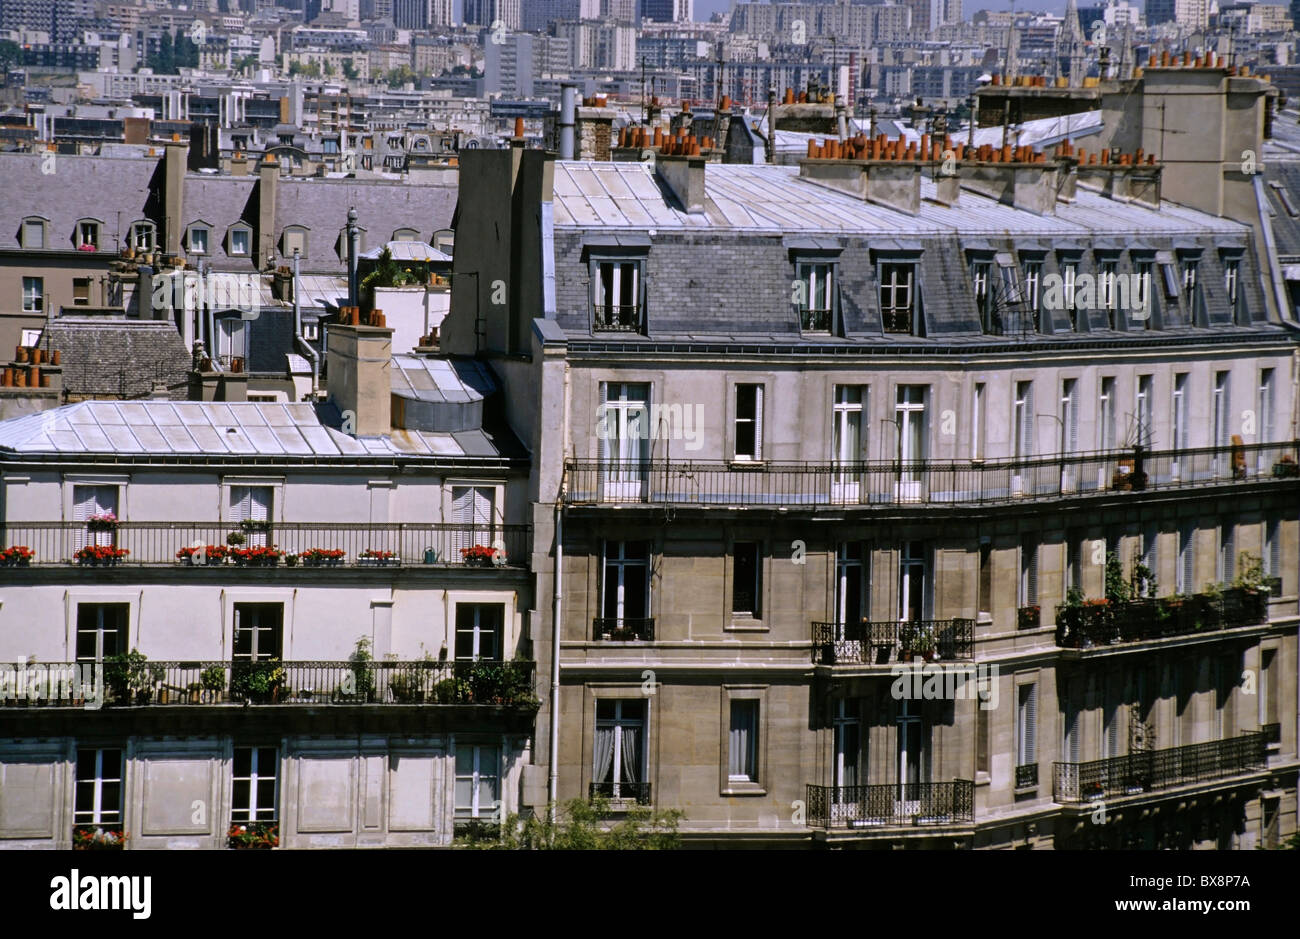 Balconies of apartment buildings on Ile Saint-Louis, Paris, France. Stock Photo